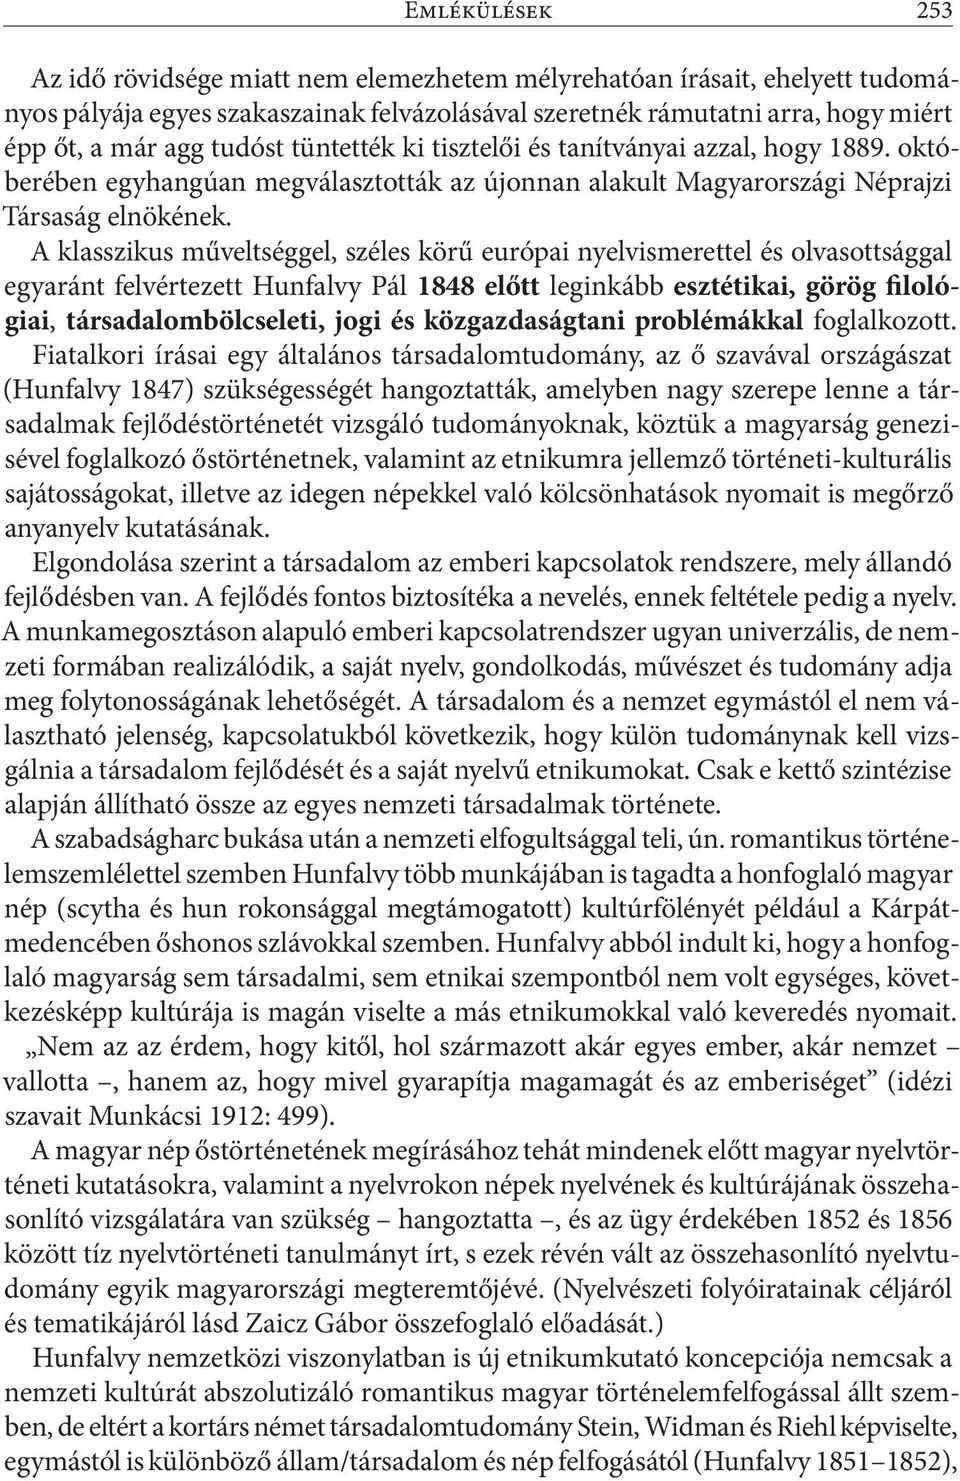 A klasszikus műveltséggel, széles körű európai nyelvismerettel és olvasottsággal egyaránt felvértezett Hunfalvy Pál 1848 előtt leginkább esztétikai, görög filológiai, társadalombölcseleti, jogi és